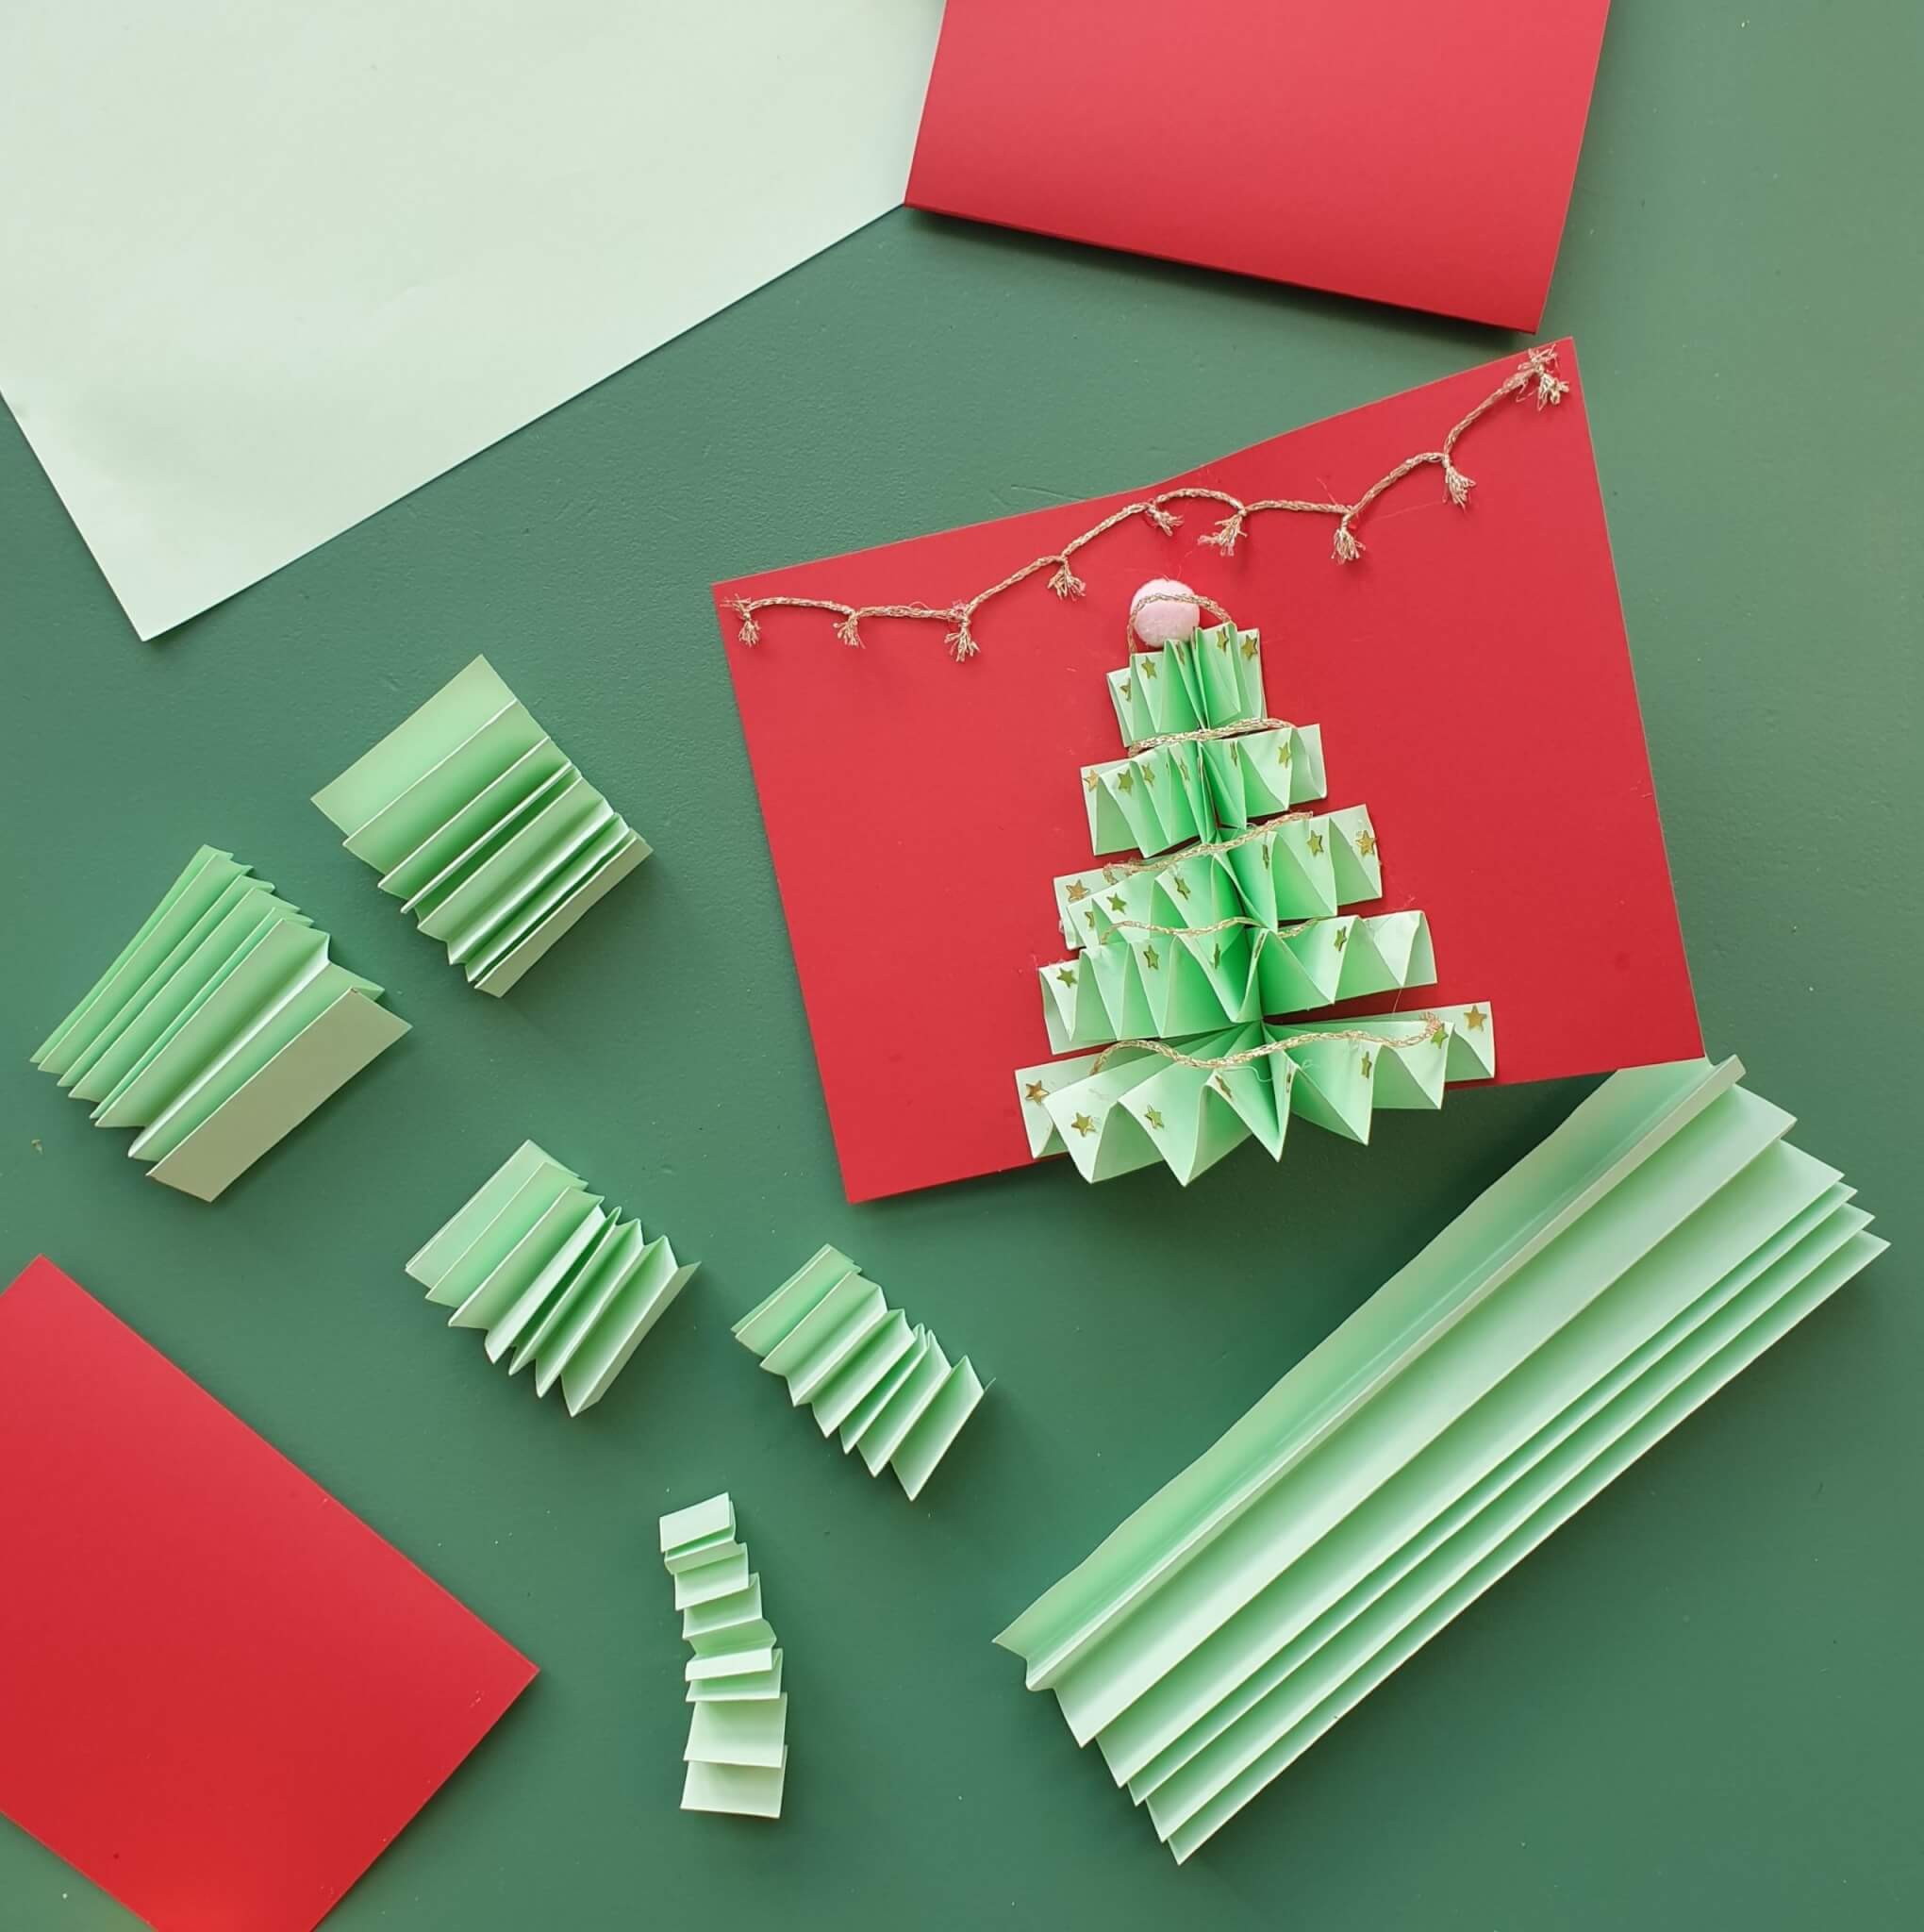 Kerstkaarten knutselen met kinderen: leuke ideeën. Dit zijn leuke kerstkaarten knutselen met kinderen, zoals deze van papier met trappetjes kerstboom.. 